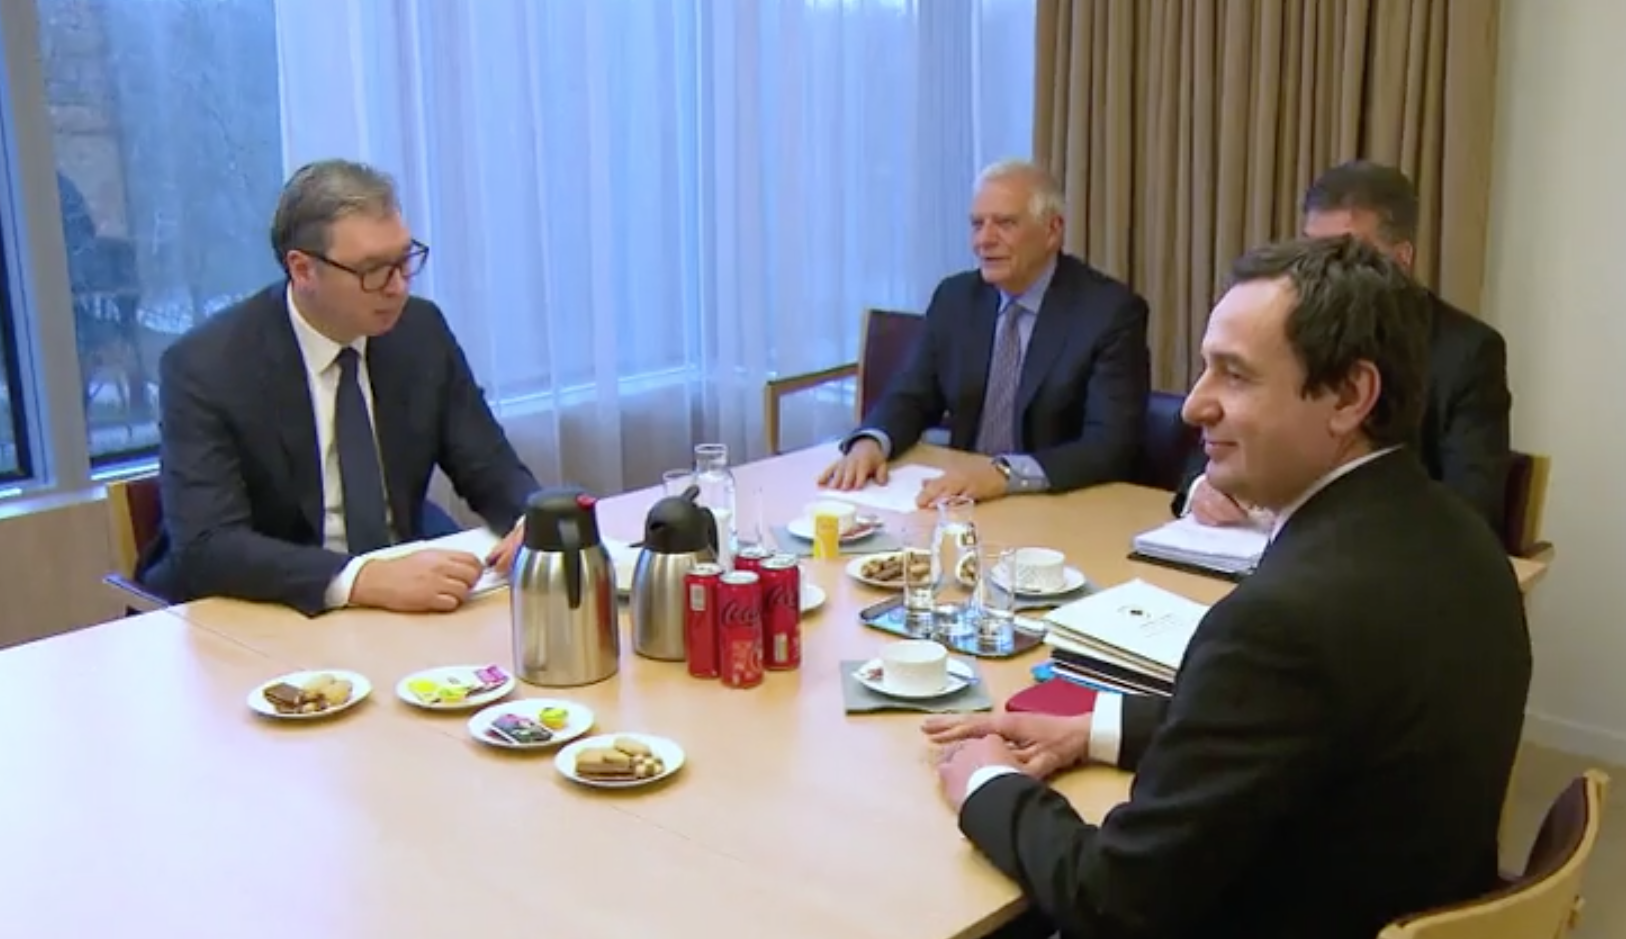 L’incontro di ieri tra Vučić e Kurti a Bruxelles - © Commissione europea